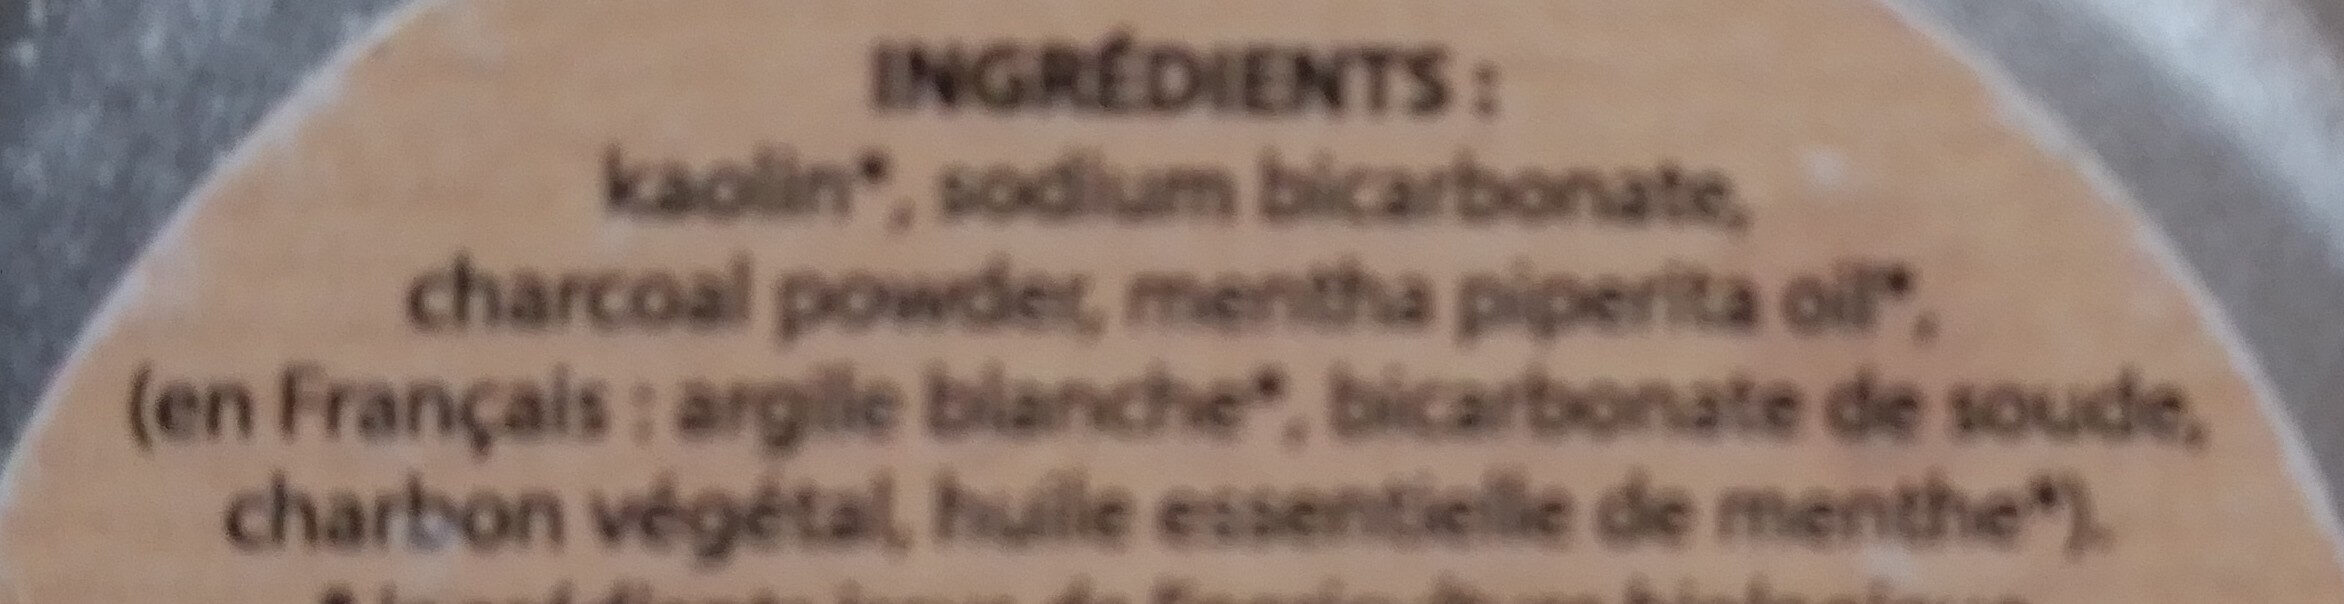 dentifrice en poudre au charbon végétal et à la menthe - Ingrédients - fr